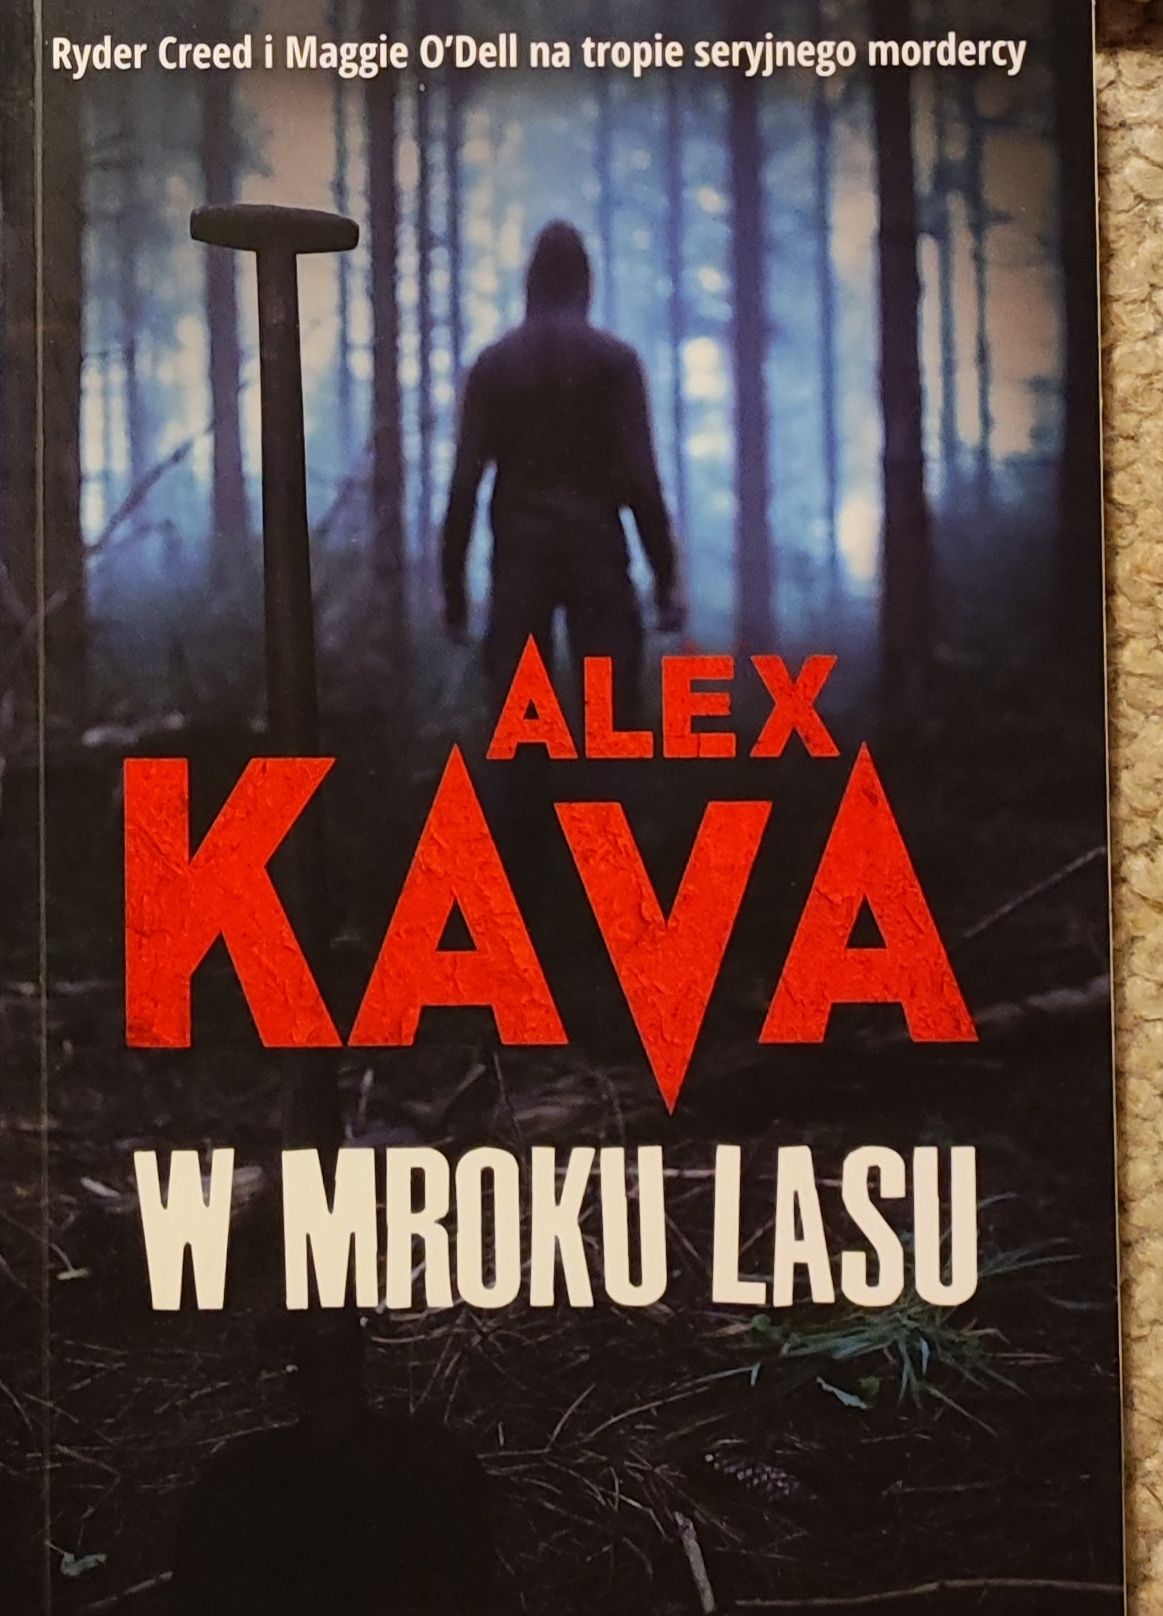 Książka pt "W mroku lasu" Alex Kava